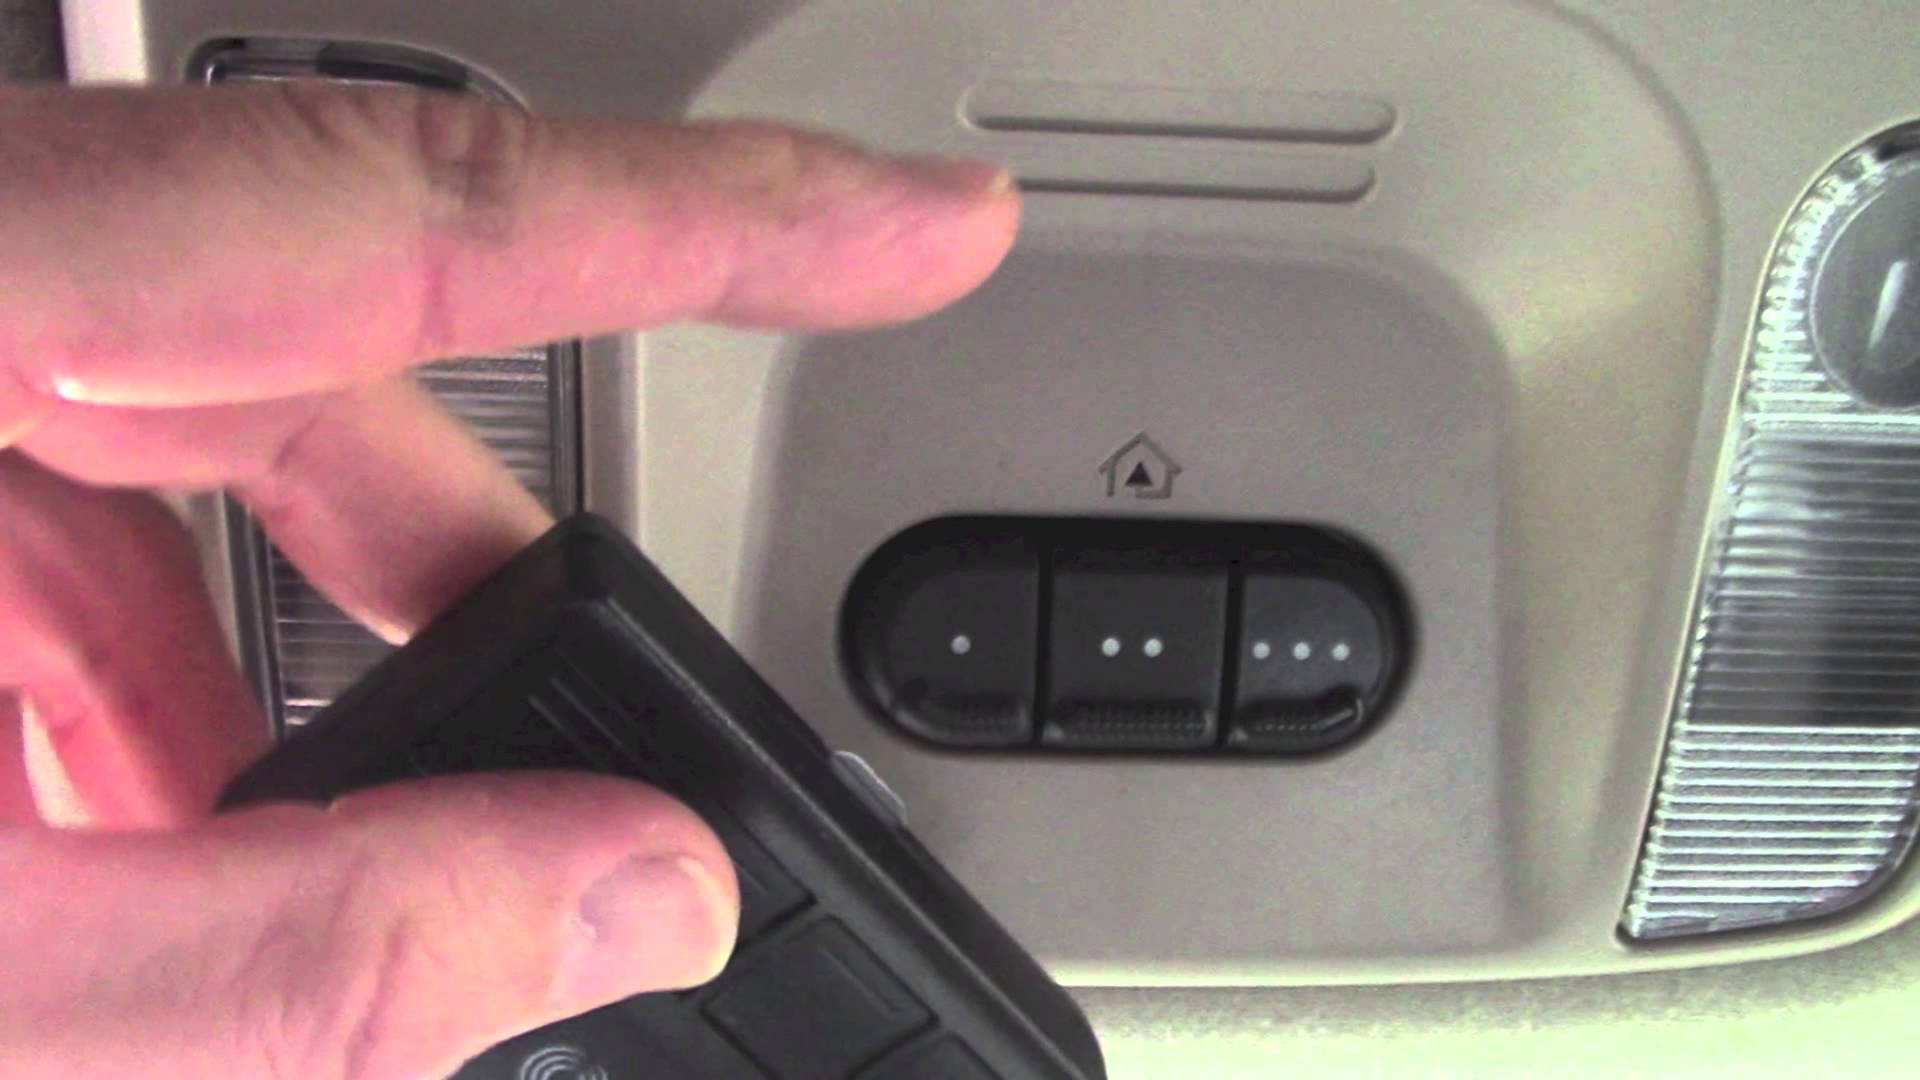 Jeep Wrangler JK: How to Program HomeLink Garage Door Opener | Jk-forum